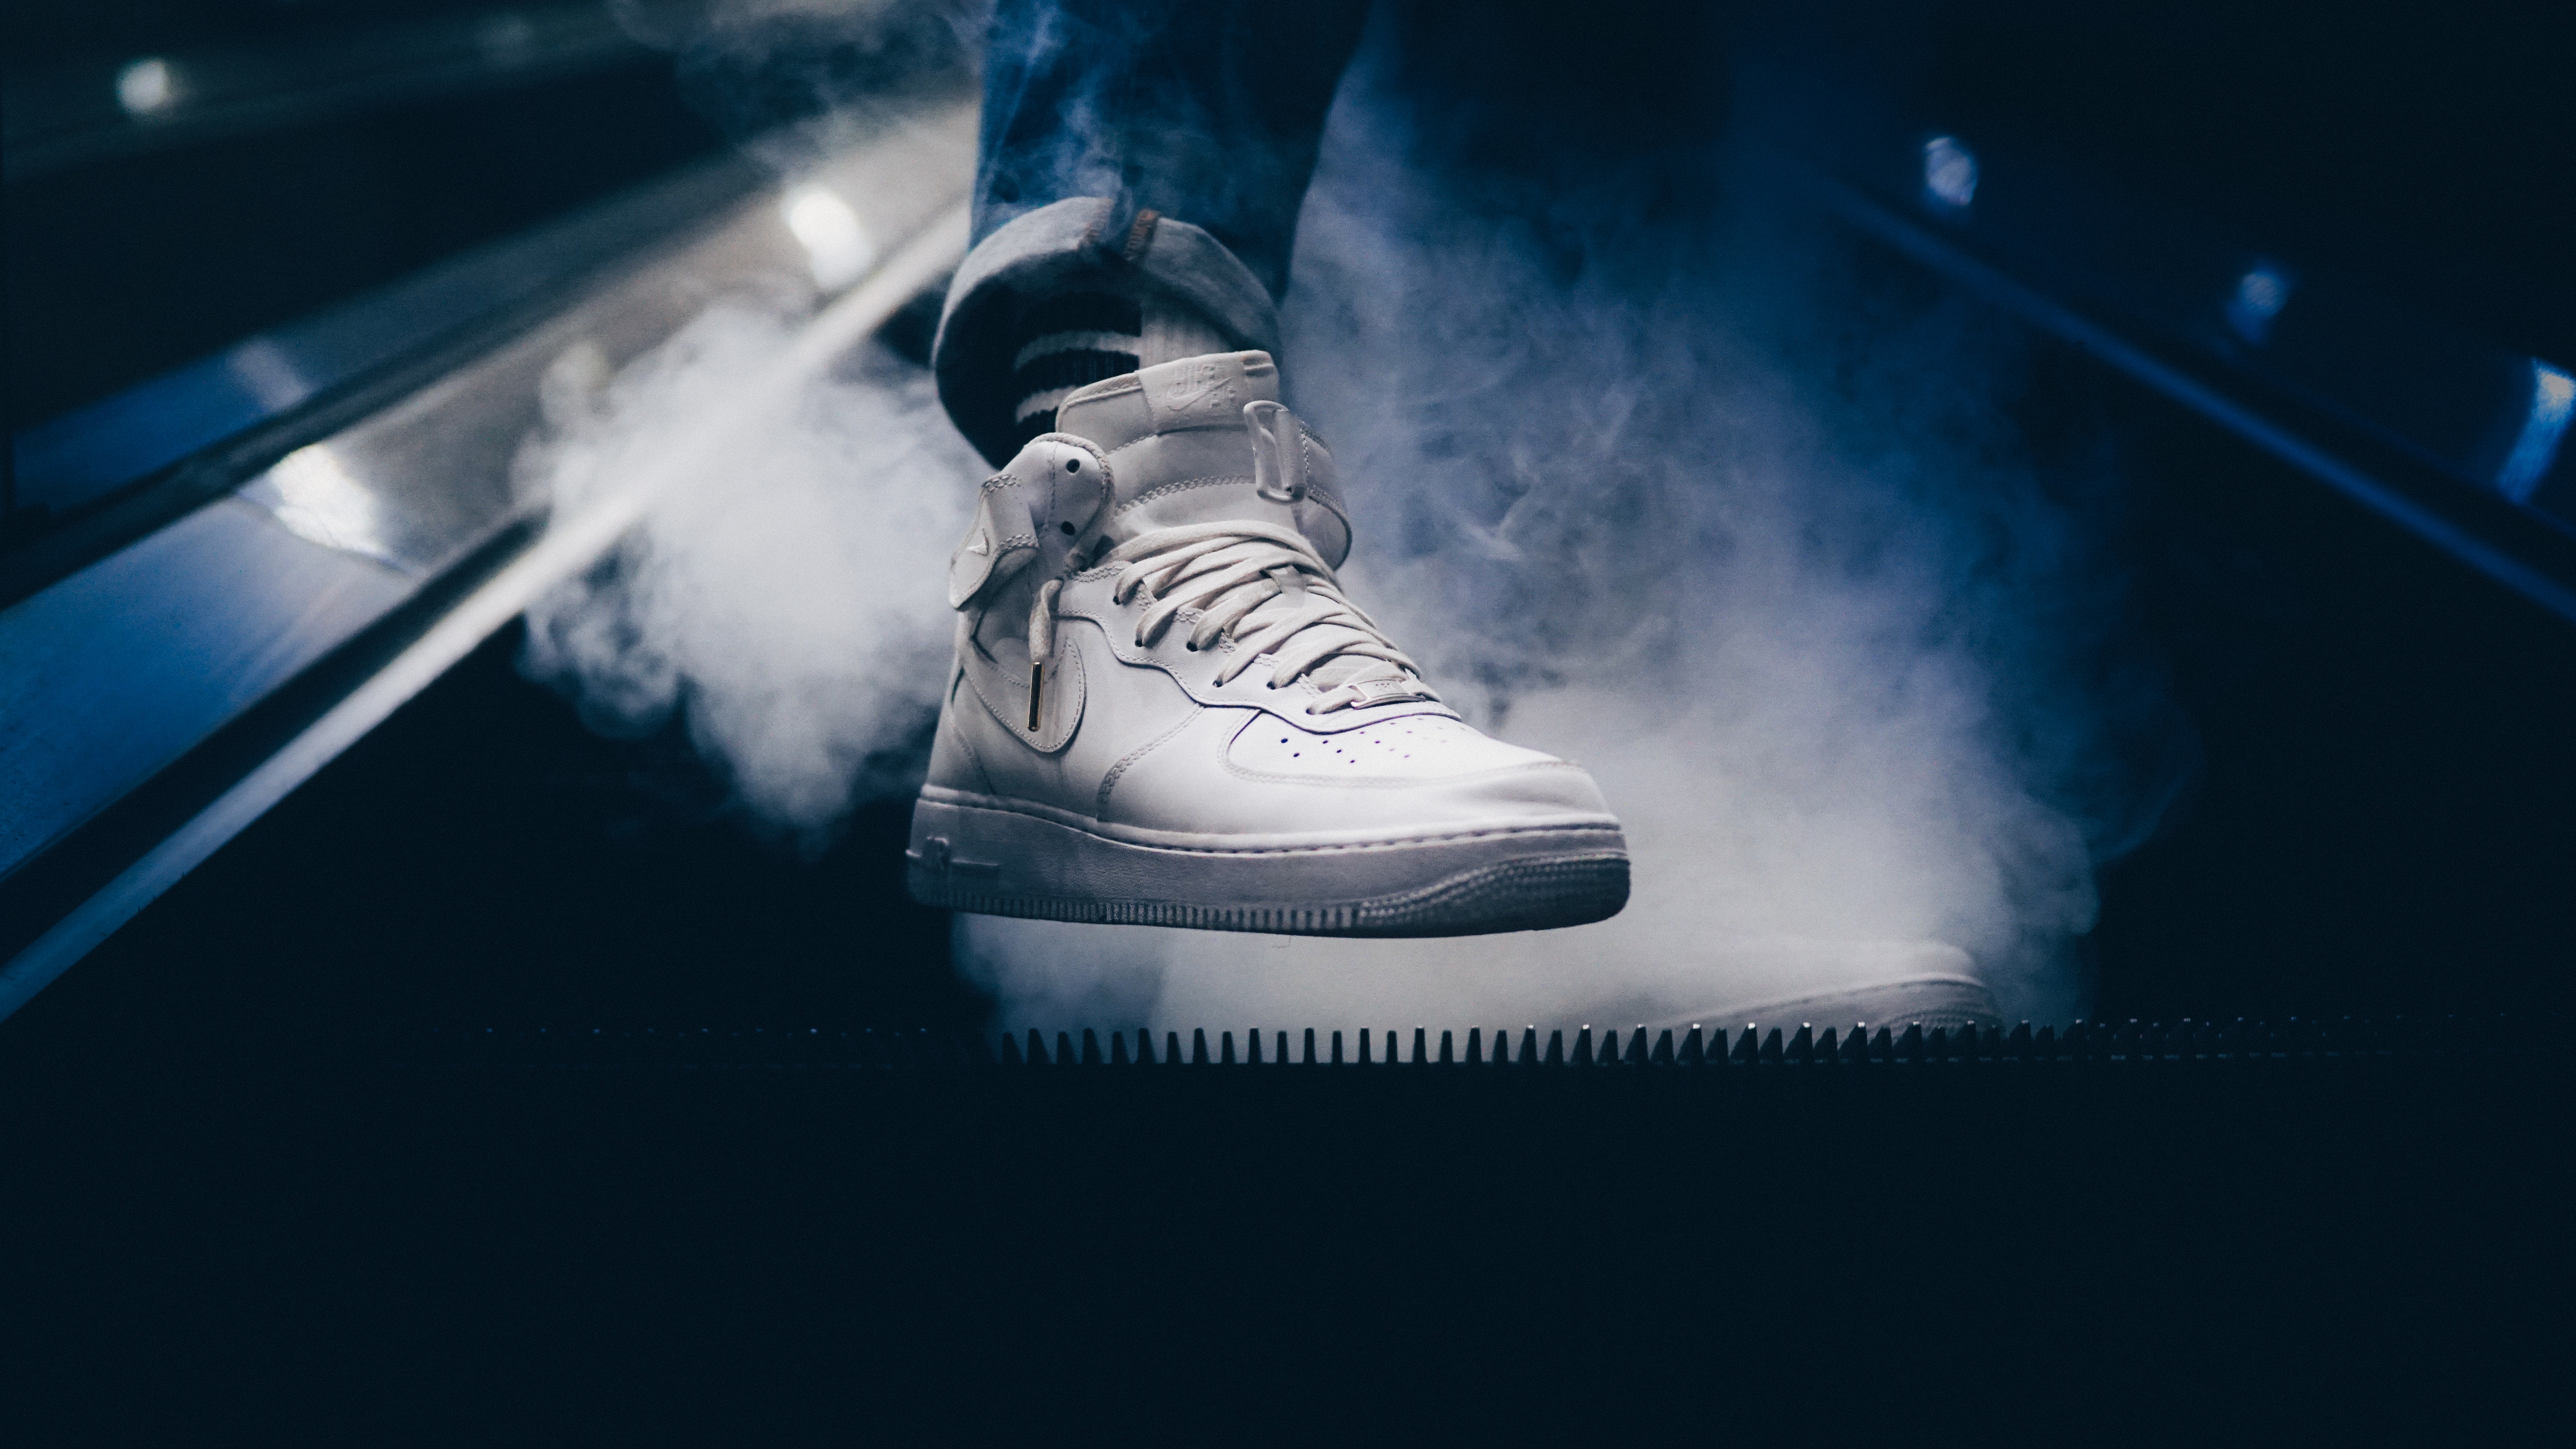 smoke, miscellanea, miscellaneous, sneakers, leg, sneaker HD wallpaper